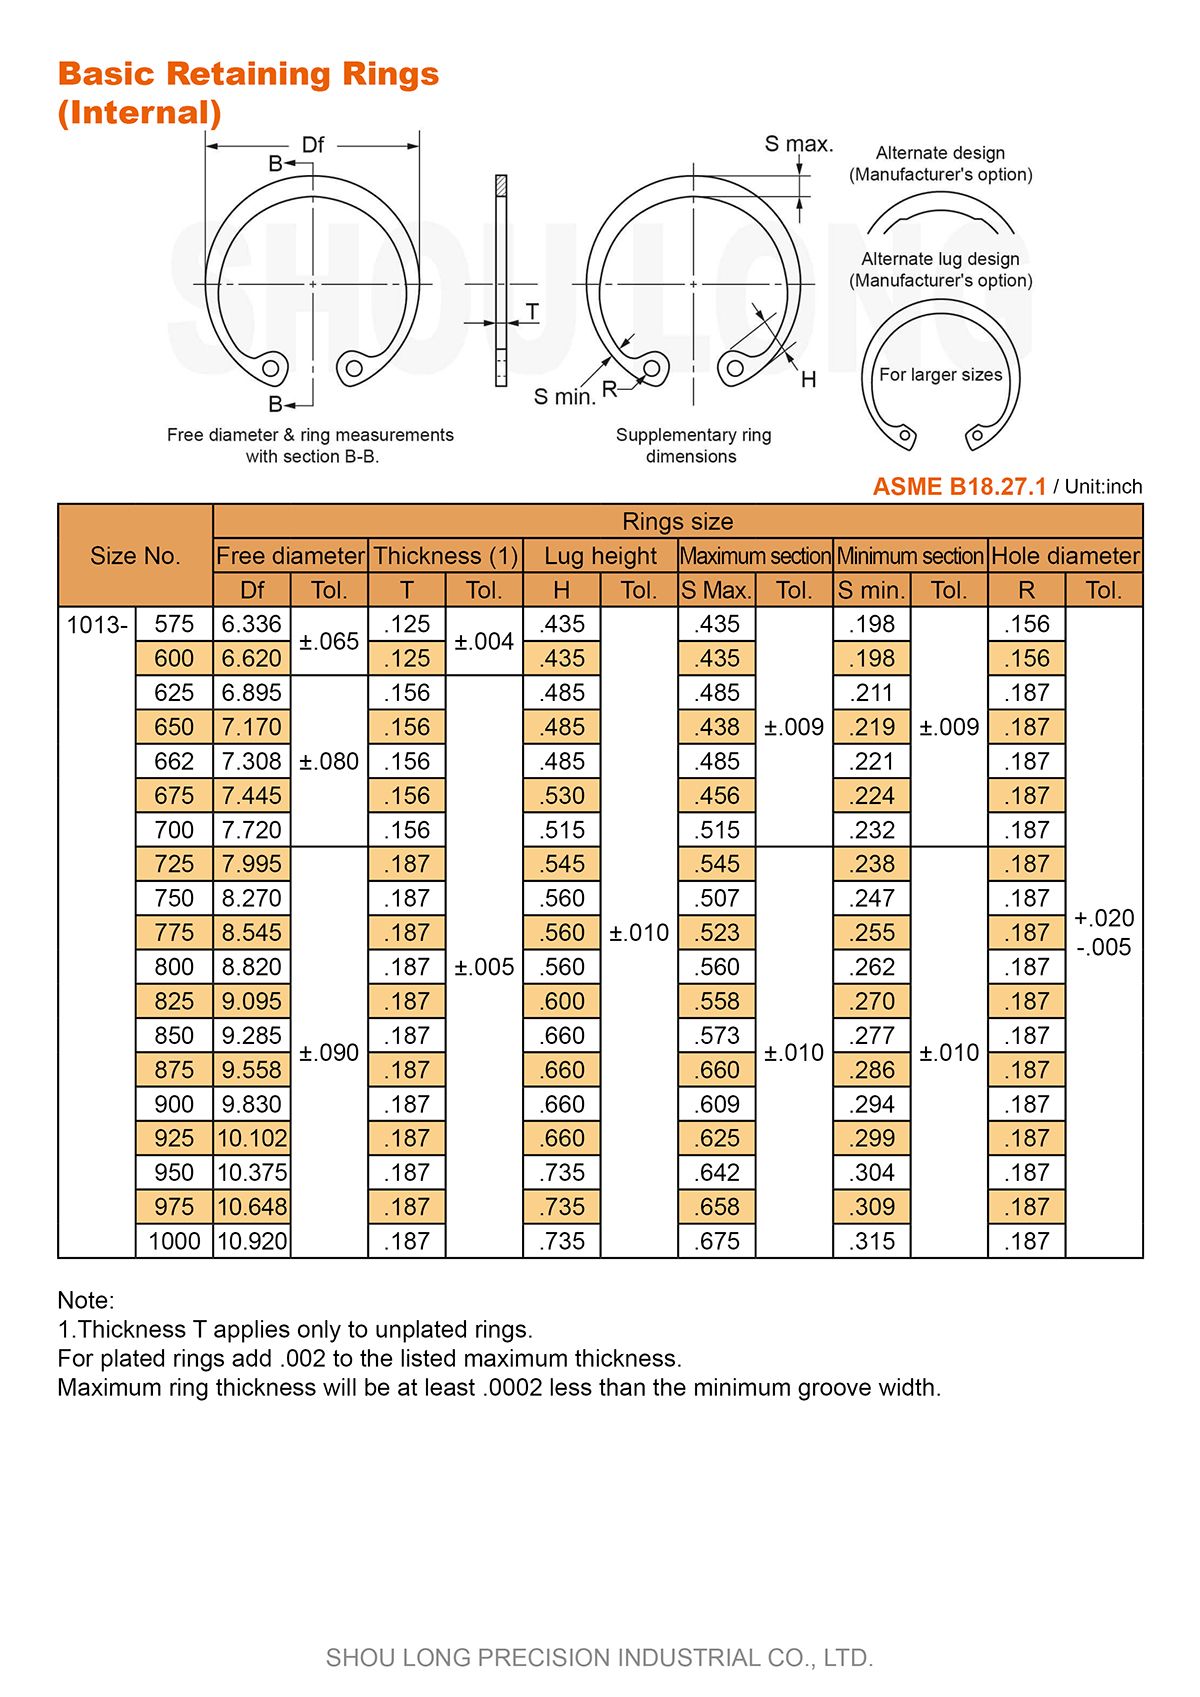 Especificação de Anéis de Retenção Básicos em Polegadas para Furos ASME/ANSI B18.27.1-4